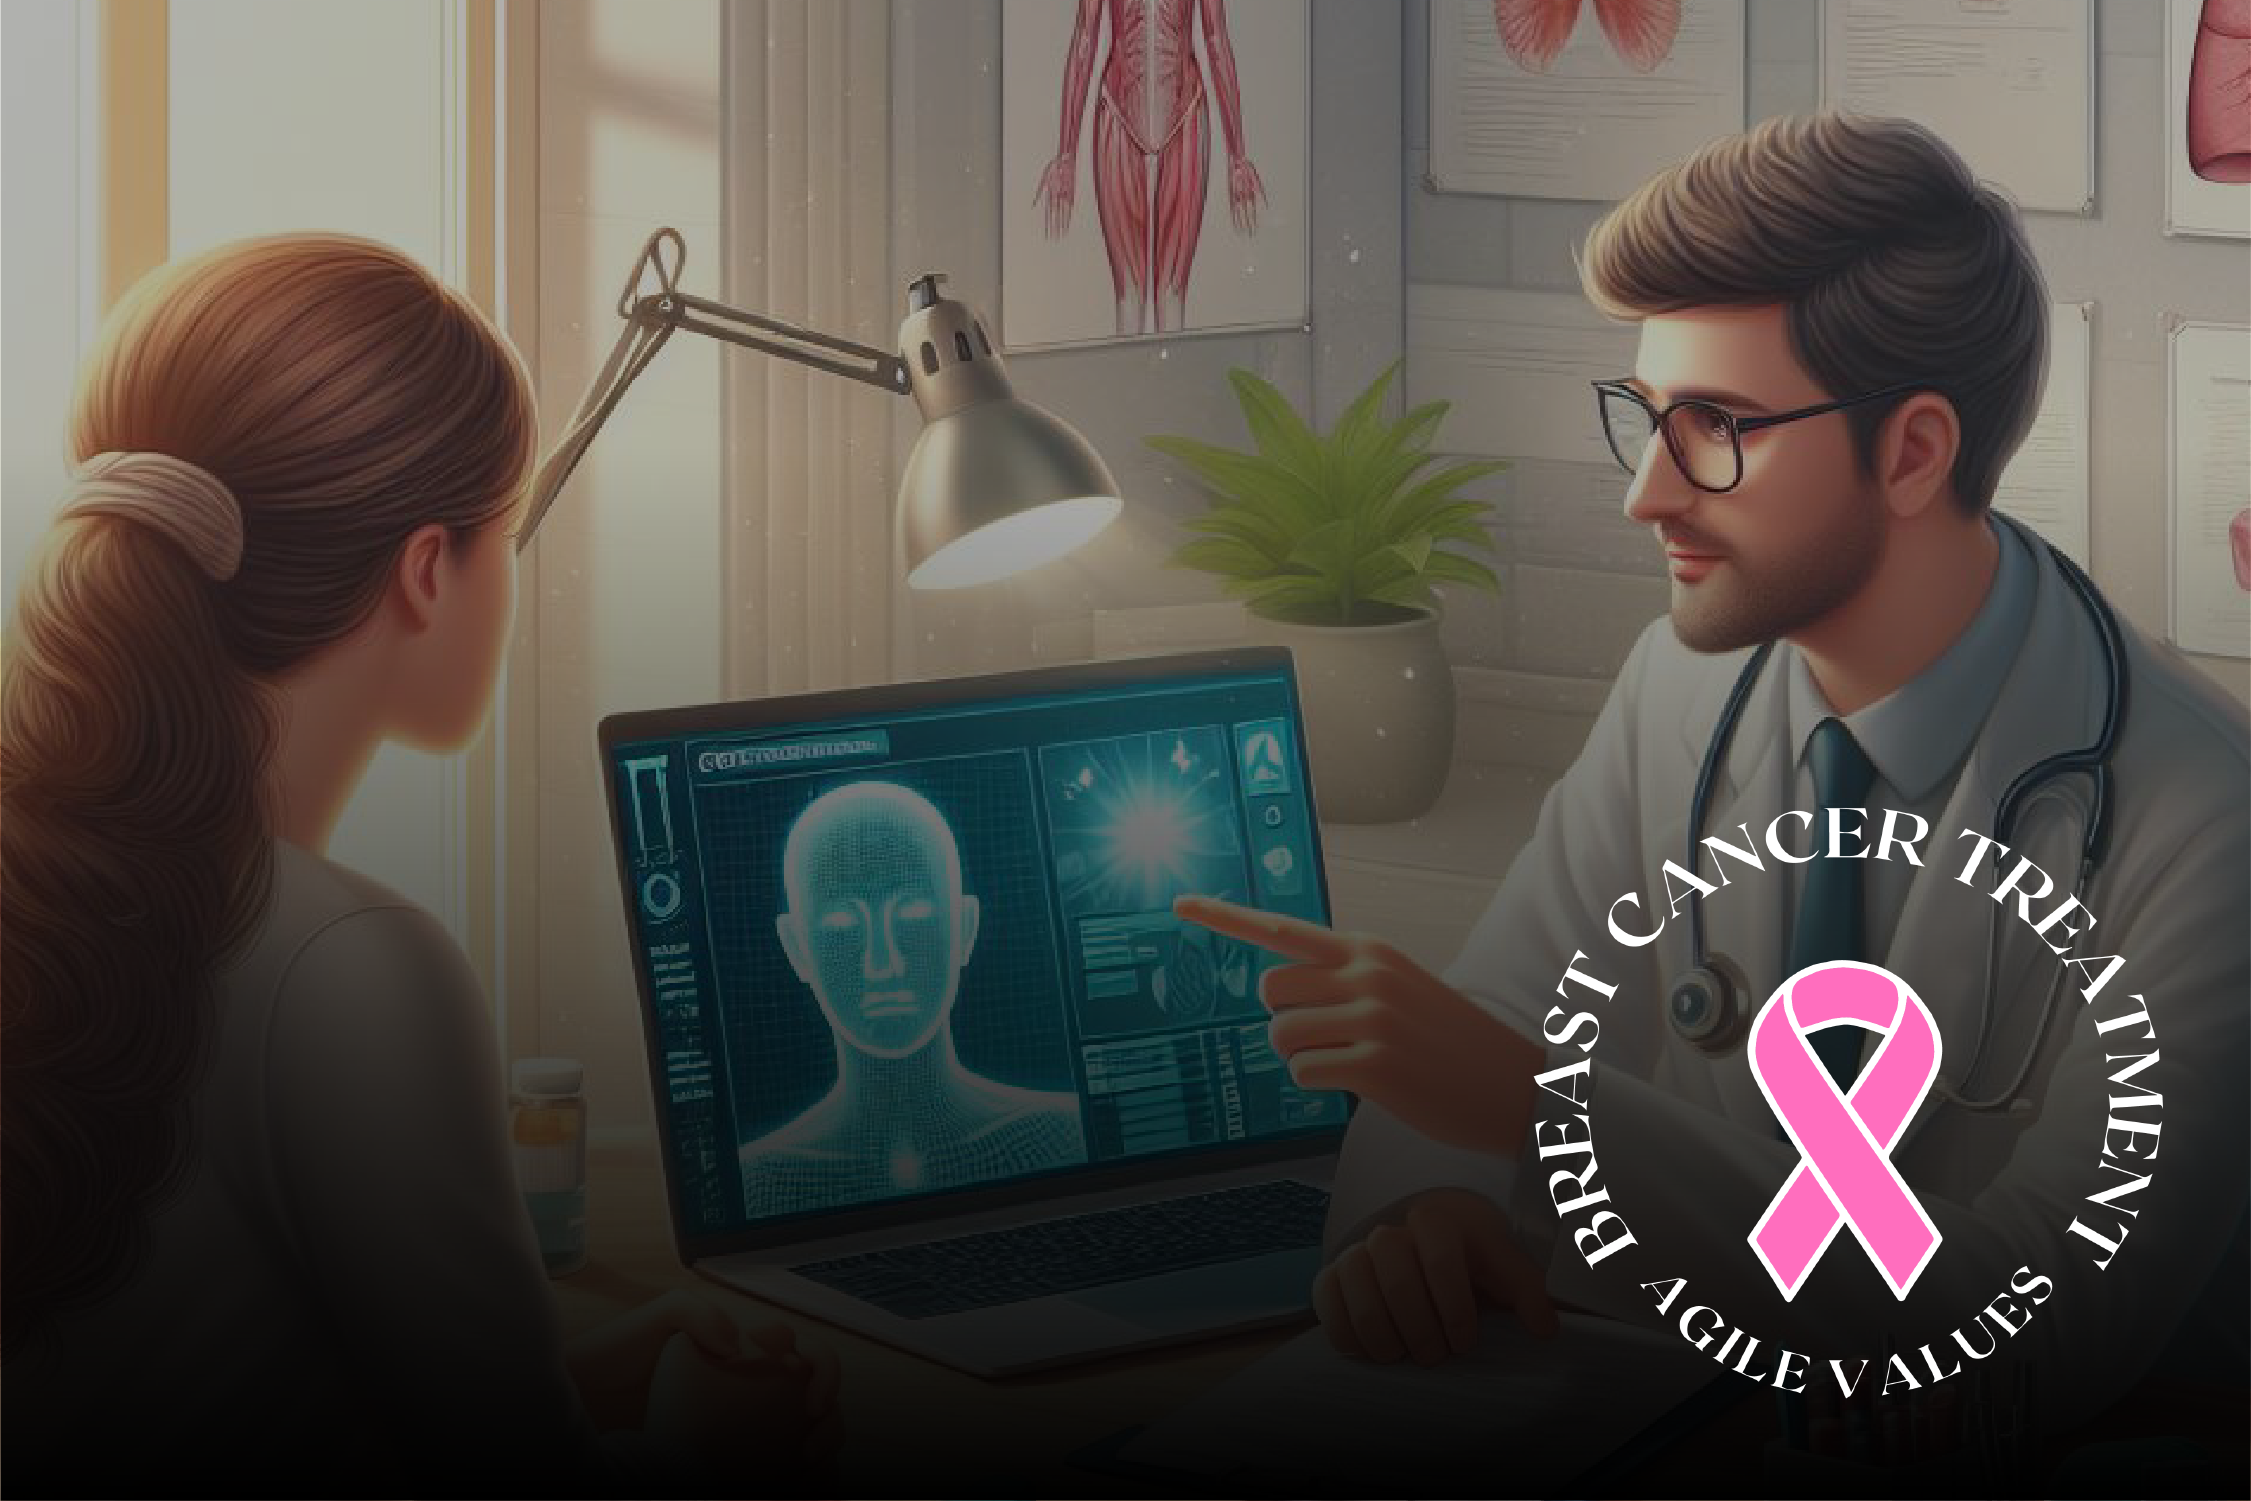 الحلقة ٥ من ٥ - الأخيرة القيمة المرنة الرابعة من هندسة البرمجيات لعلاج سرطان الثدي التركيز على التجاوب مع التغييرات الطارئة في الخطة العلاجية بدلا من اتباع خطة علاجية ثابتة